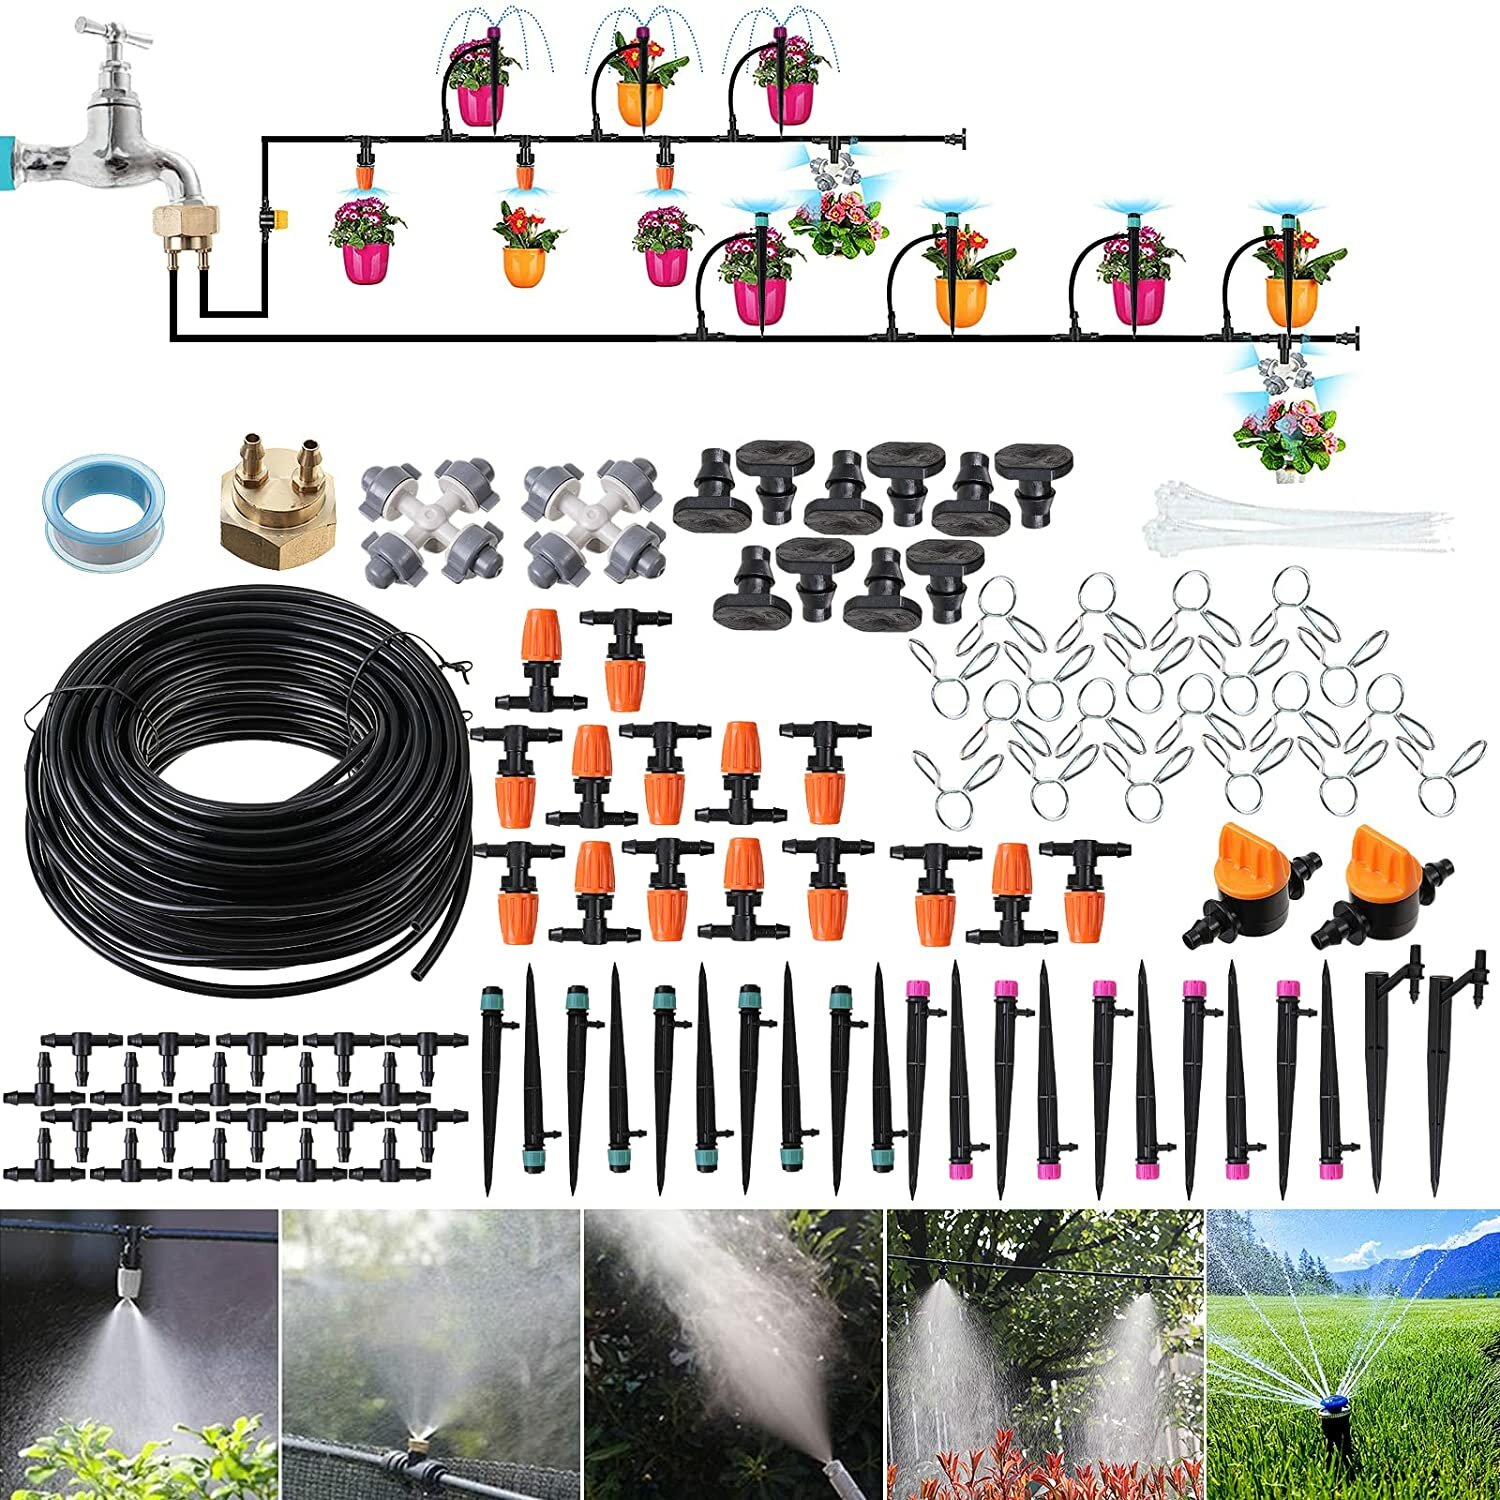 Druppelbevloeiingskit 18 m tuinbesproeiingssysteem Kas Patio Automatische irrigatiekits met dubbelweg messing schroefdraadconnector en 4 soorten sproeiers Eenvoudige installatiebediening